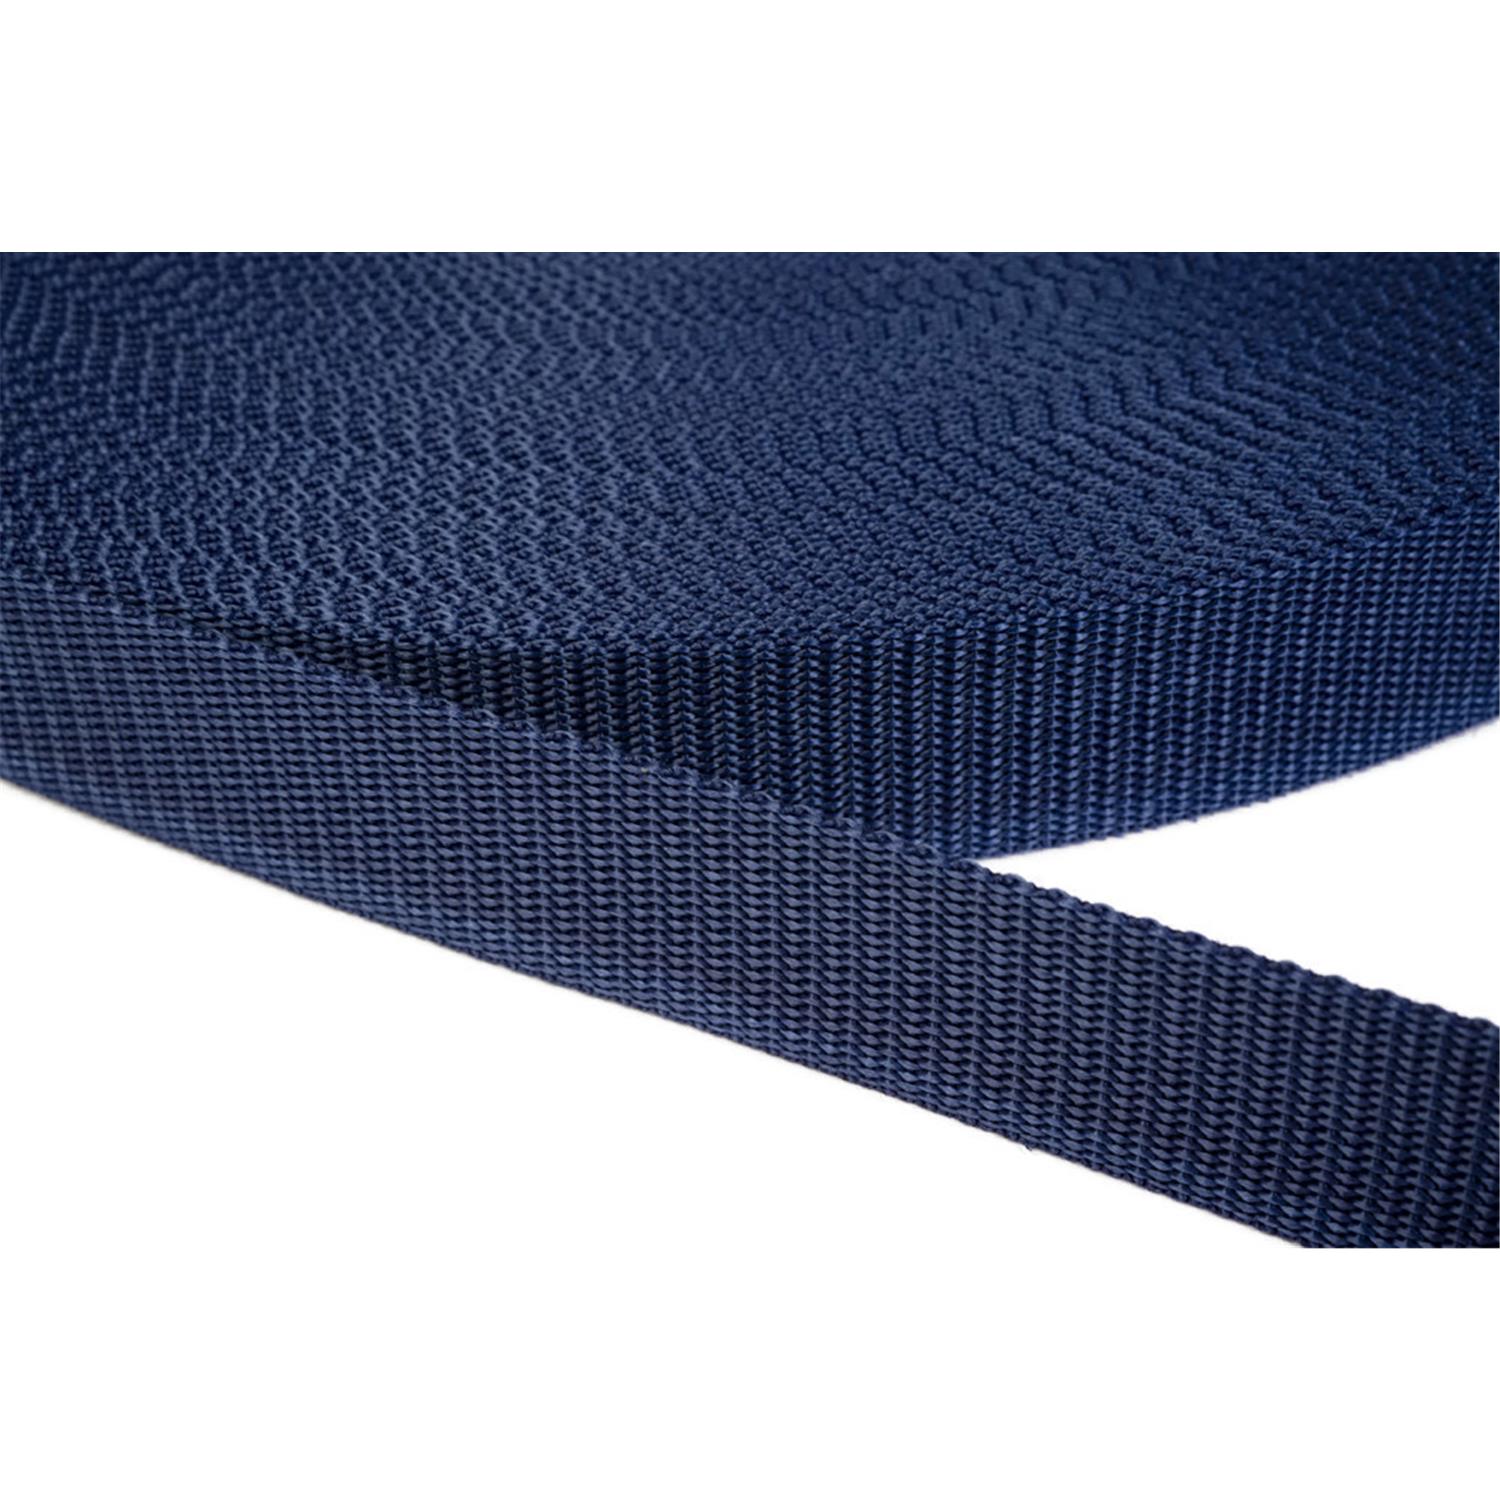 Gurtband 40mm breit aus Polypropylen in 41 Farben 27 - dunkelblau 12 Meter